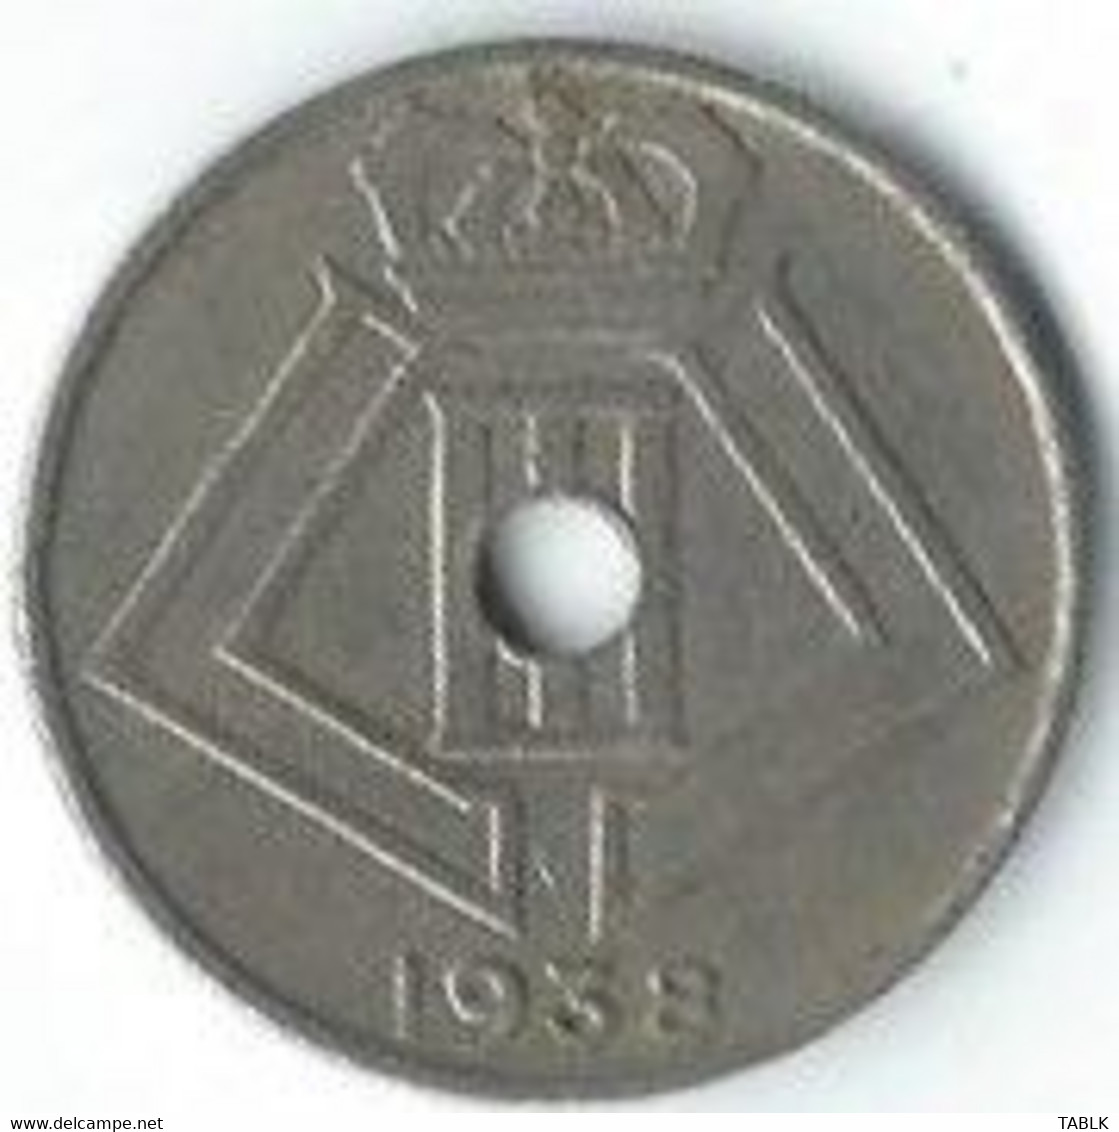 M975 - BELGIË - BELGIUM - 10 CENTIEM 1938 - 10 Cent